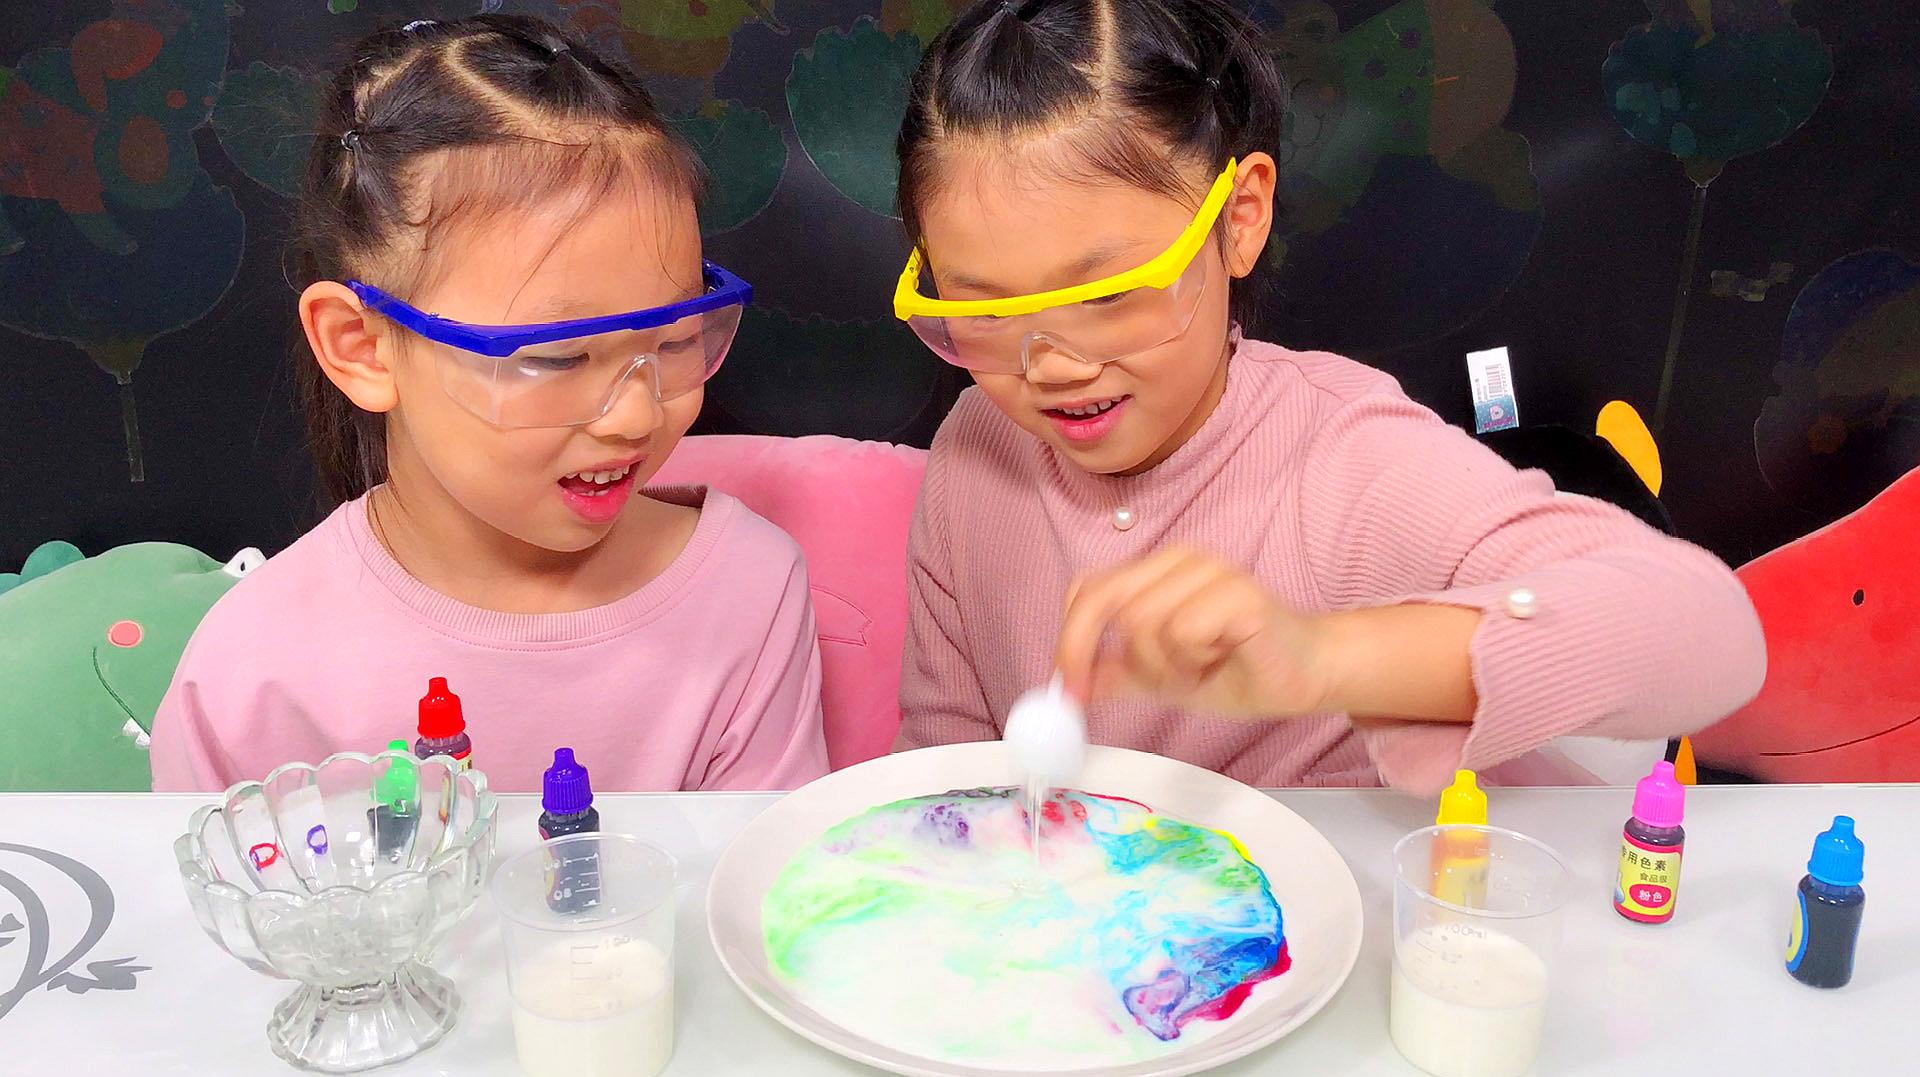 "草莓姐姐玩具屋"之早教视频:趣味科学小实验